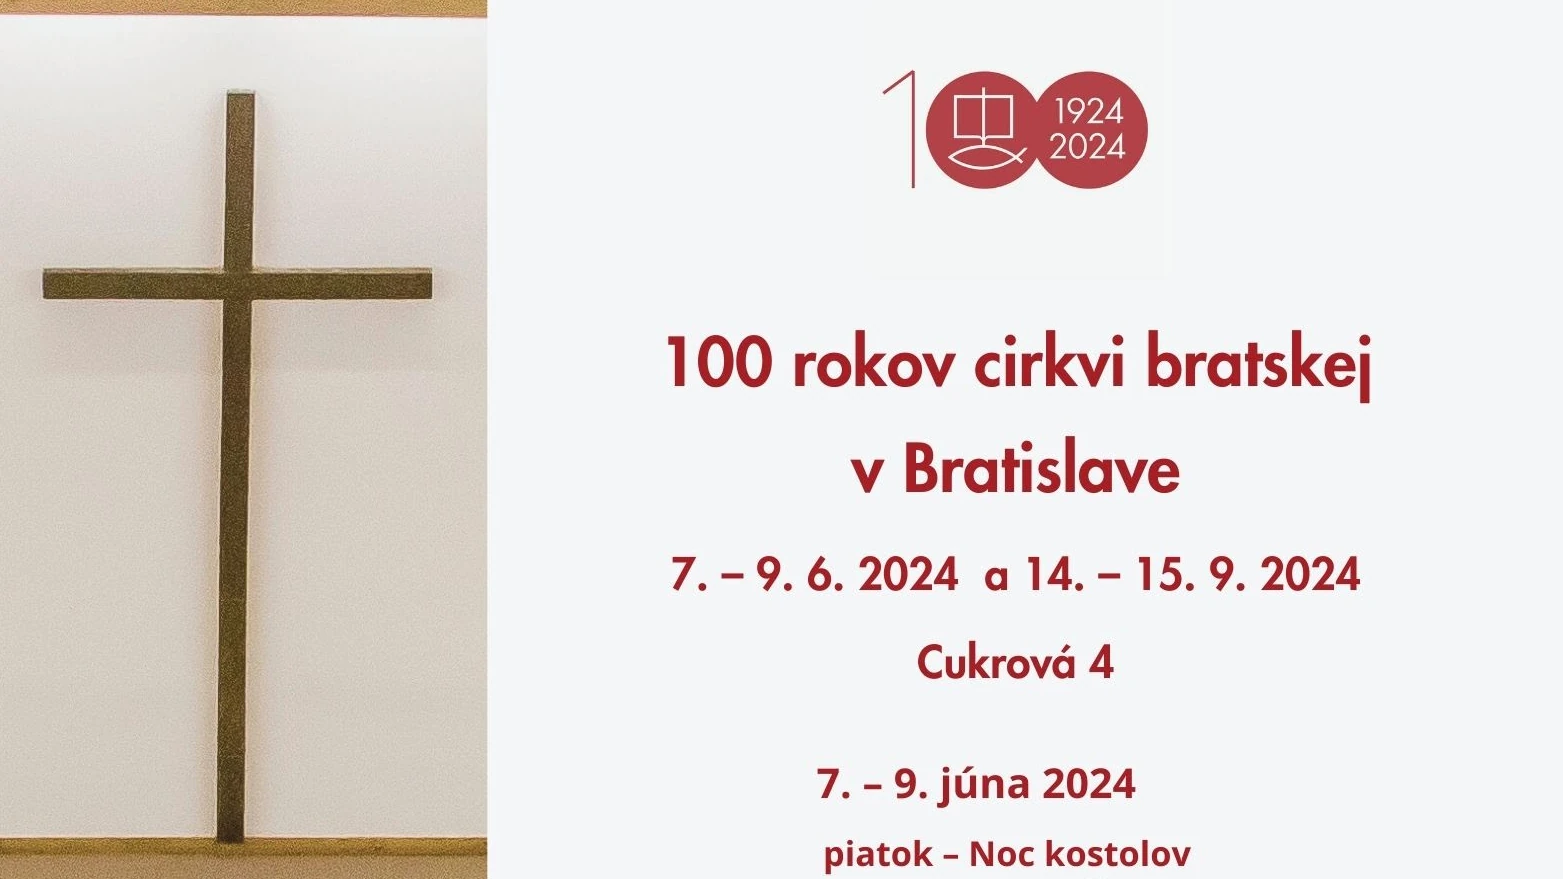 100 rokov cirkvi bratskej v Bratislave